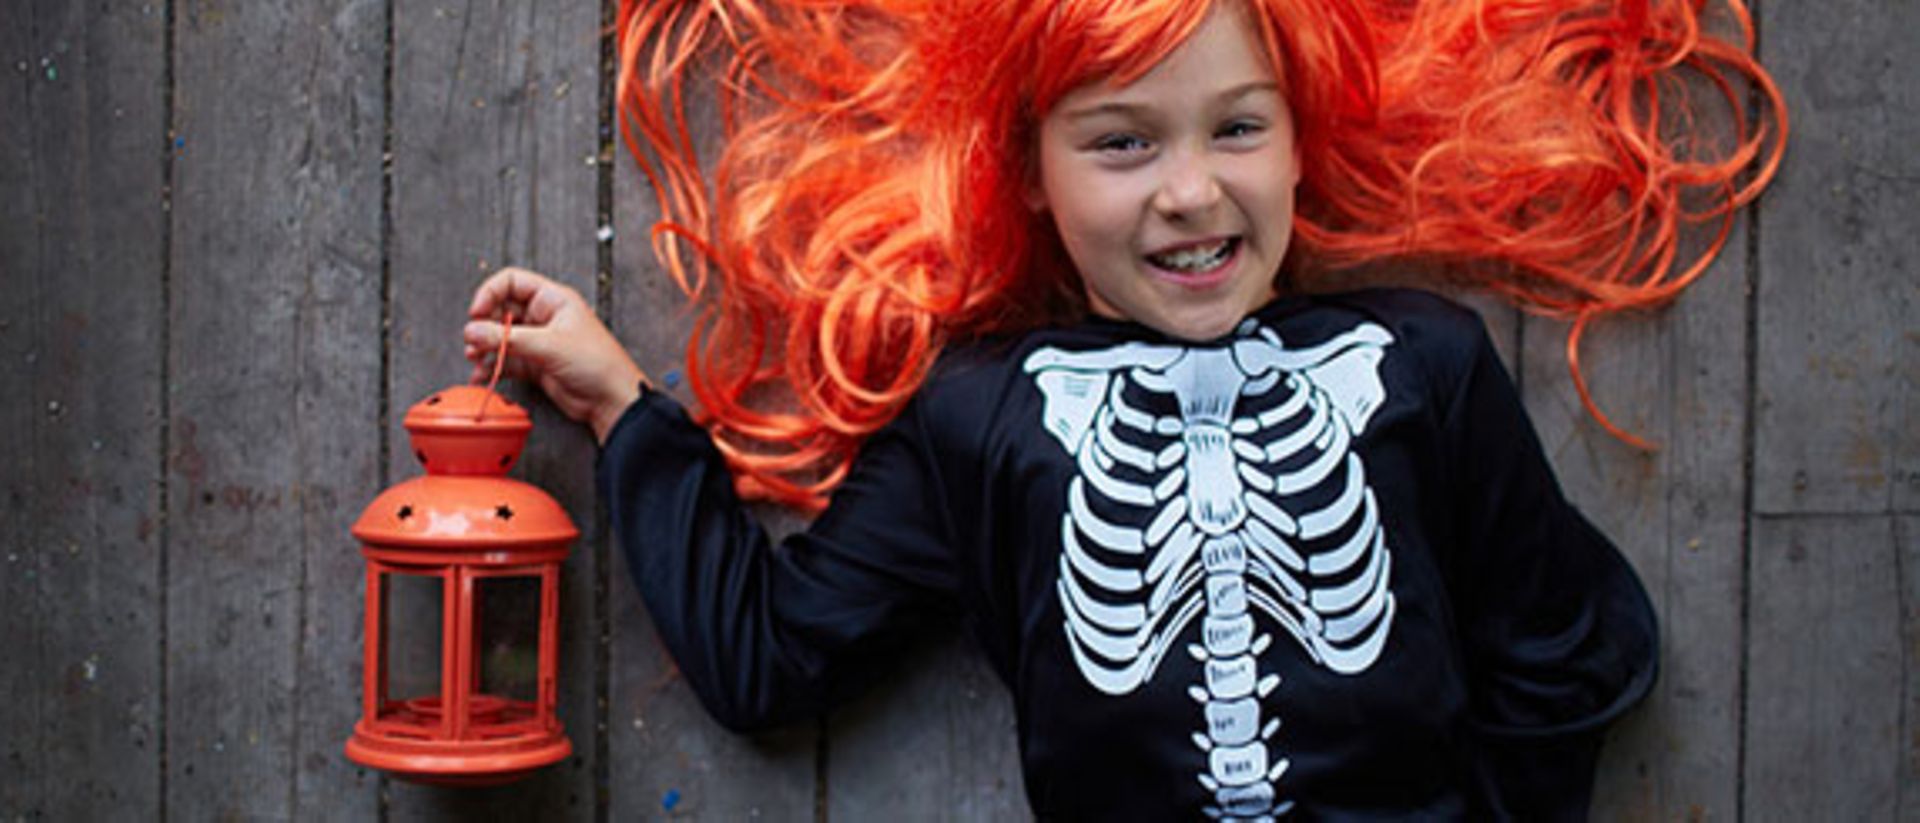 Henkel Lifetimes bietet tolle Ideen für Halloween-Kostüme